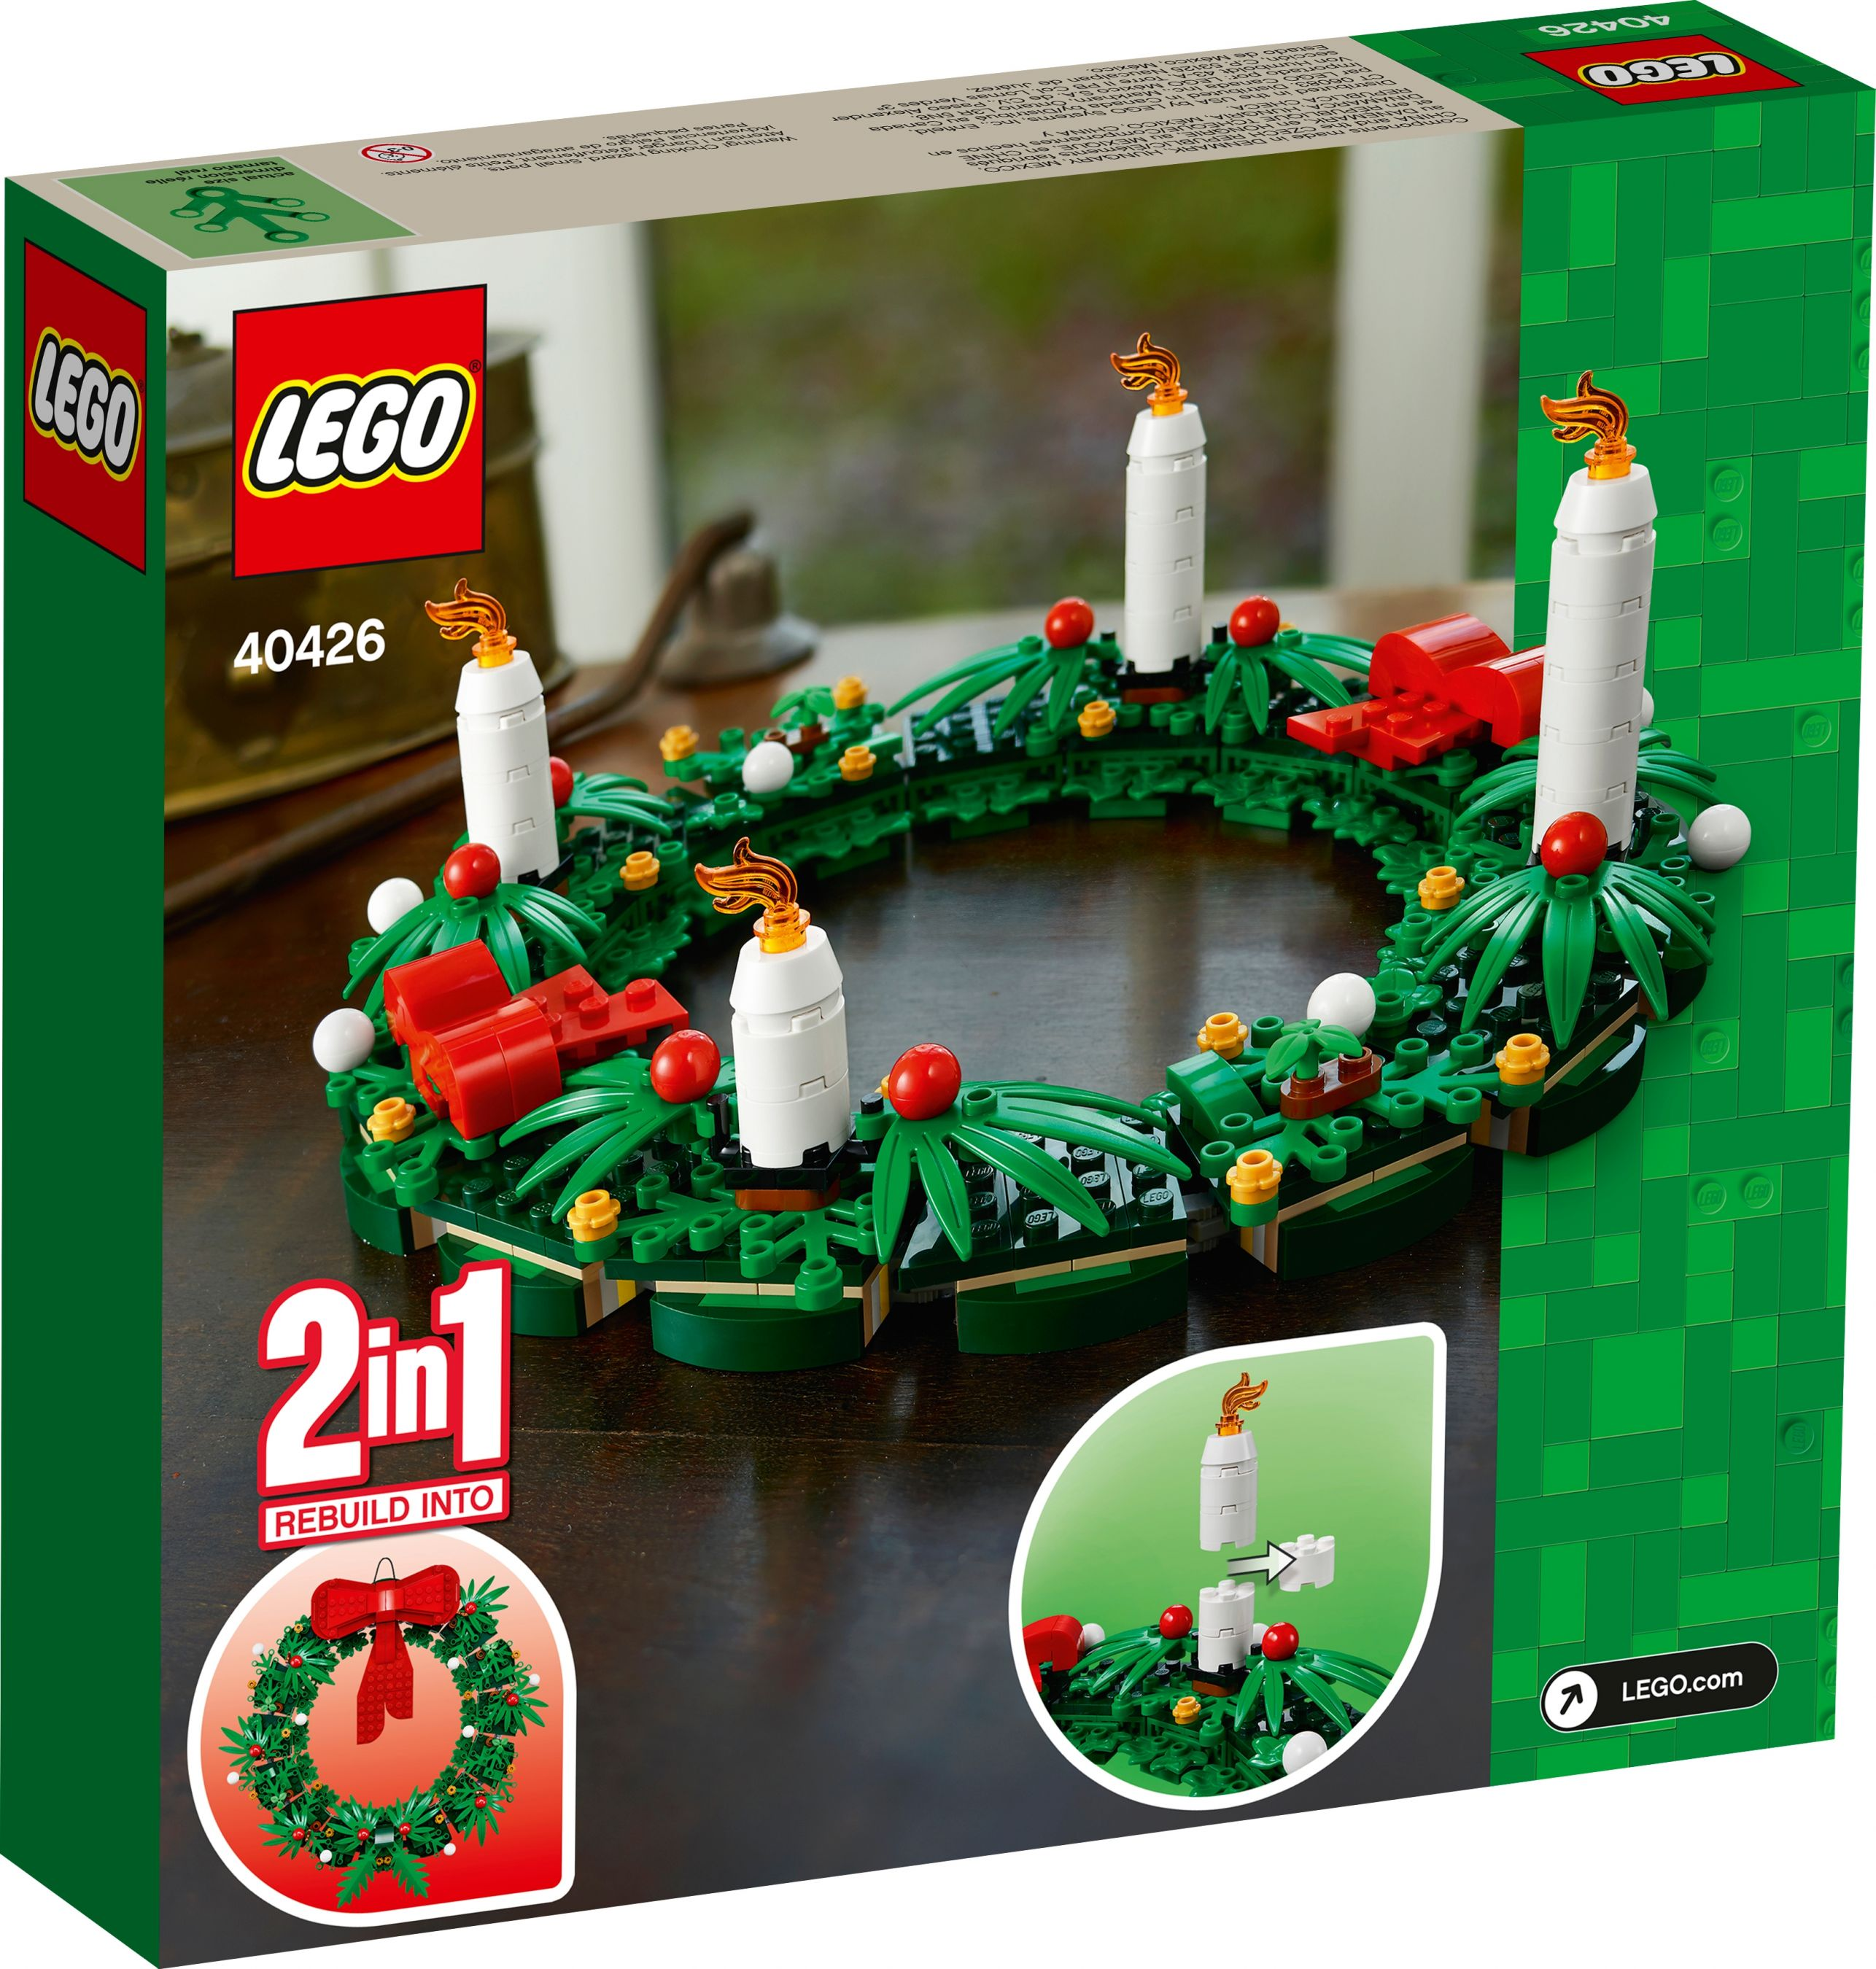 LEGO 40426 Türkranz / 2in1 Bausatz Adventskranz